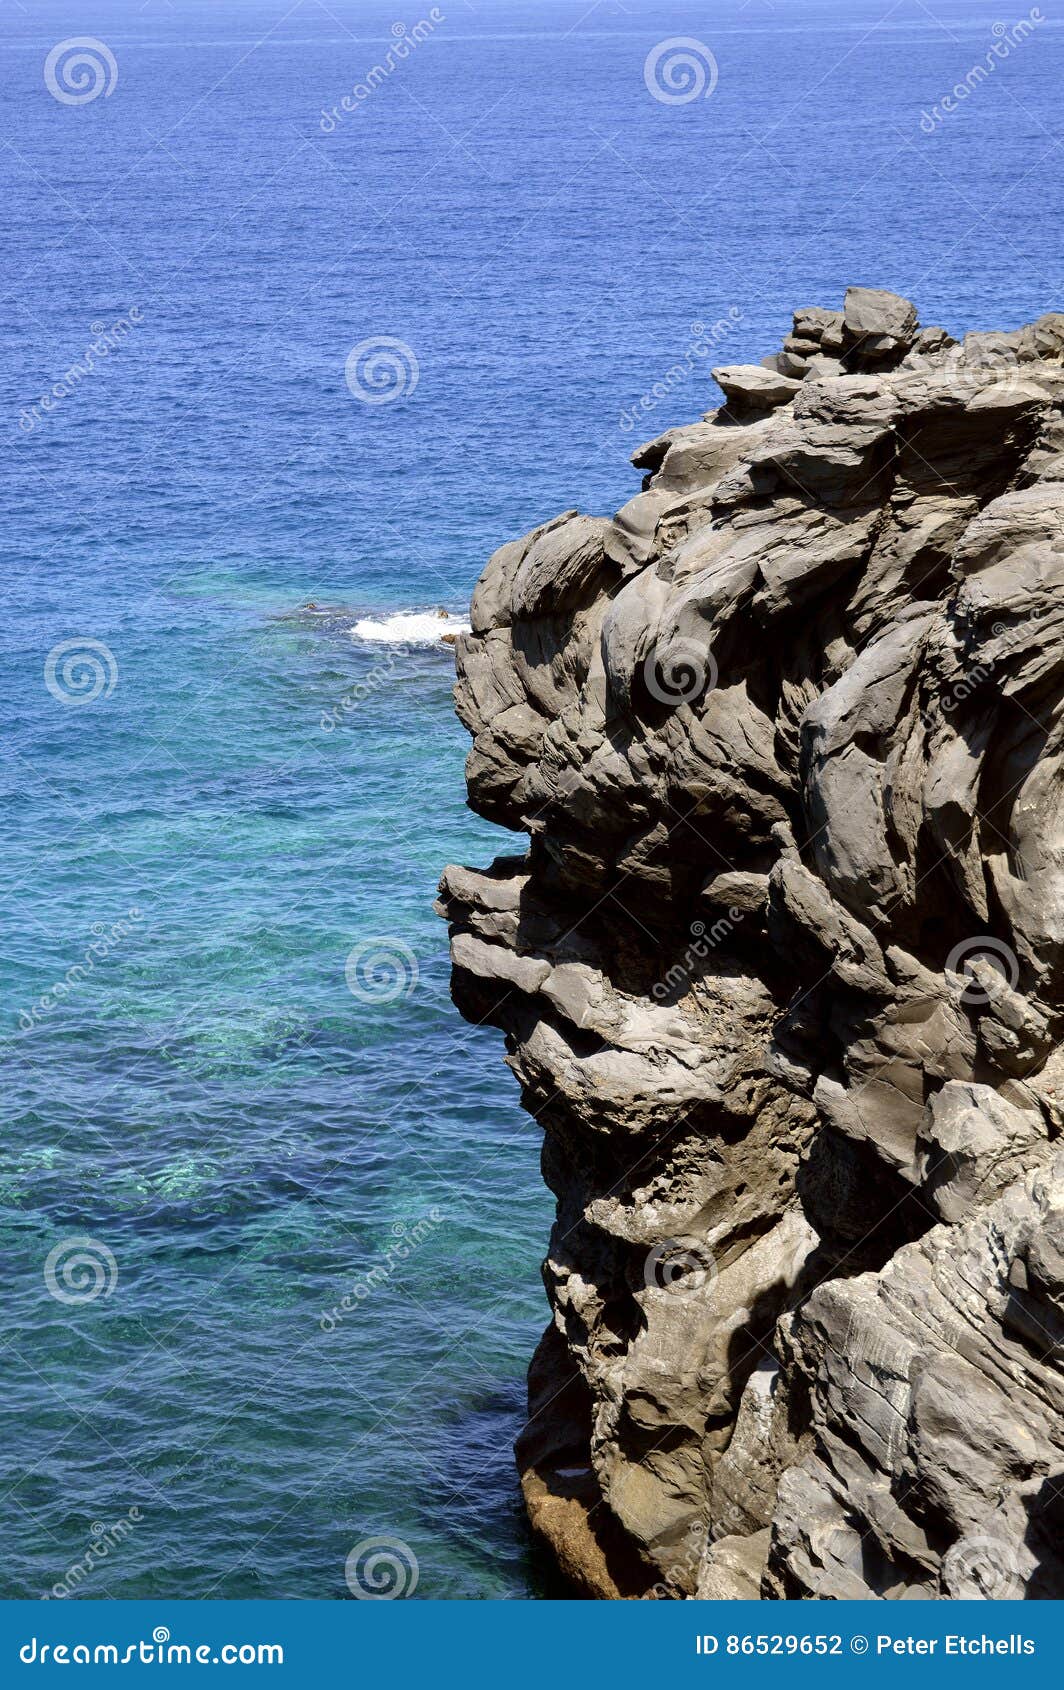 callao salvaje coast volcanic rock formation